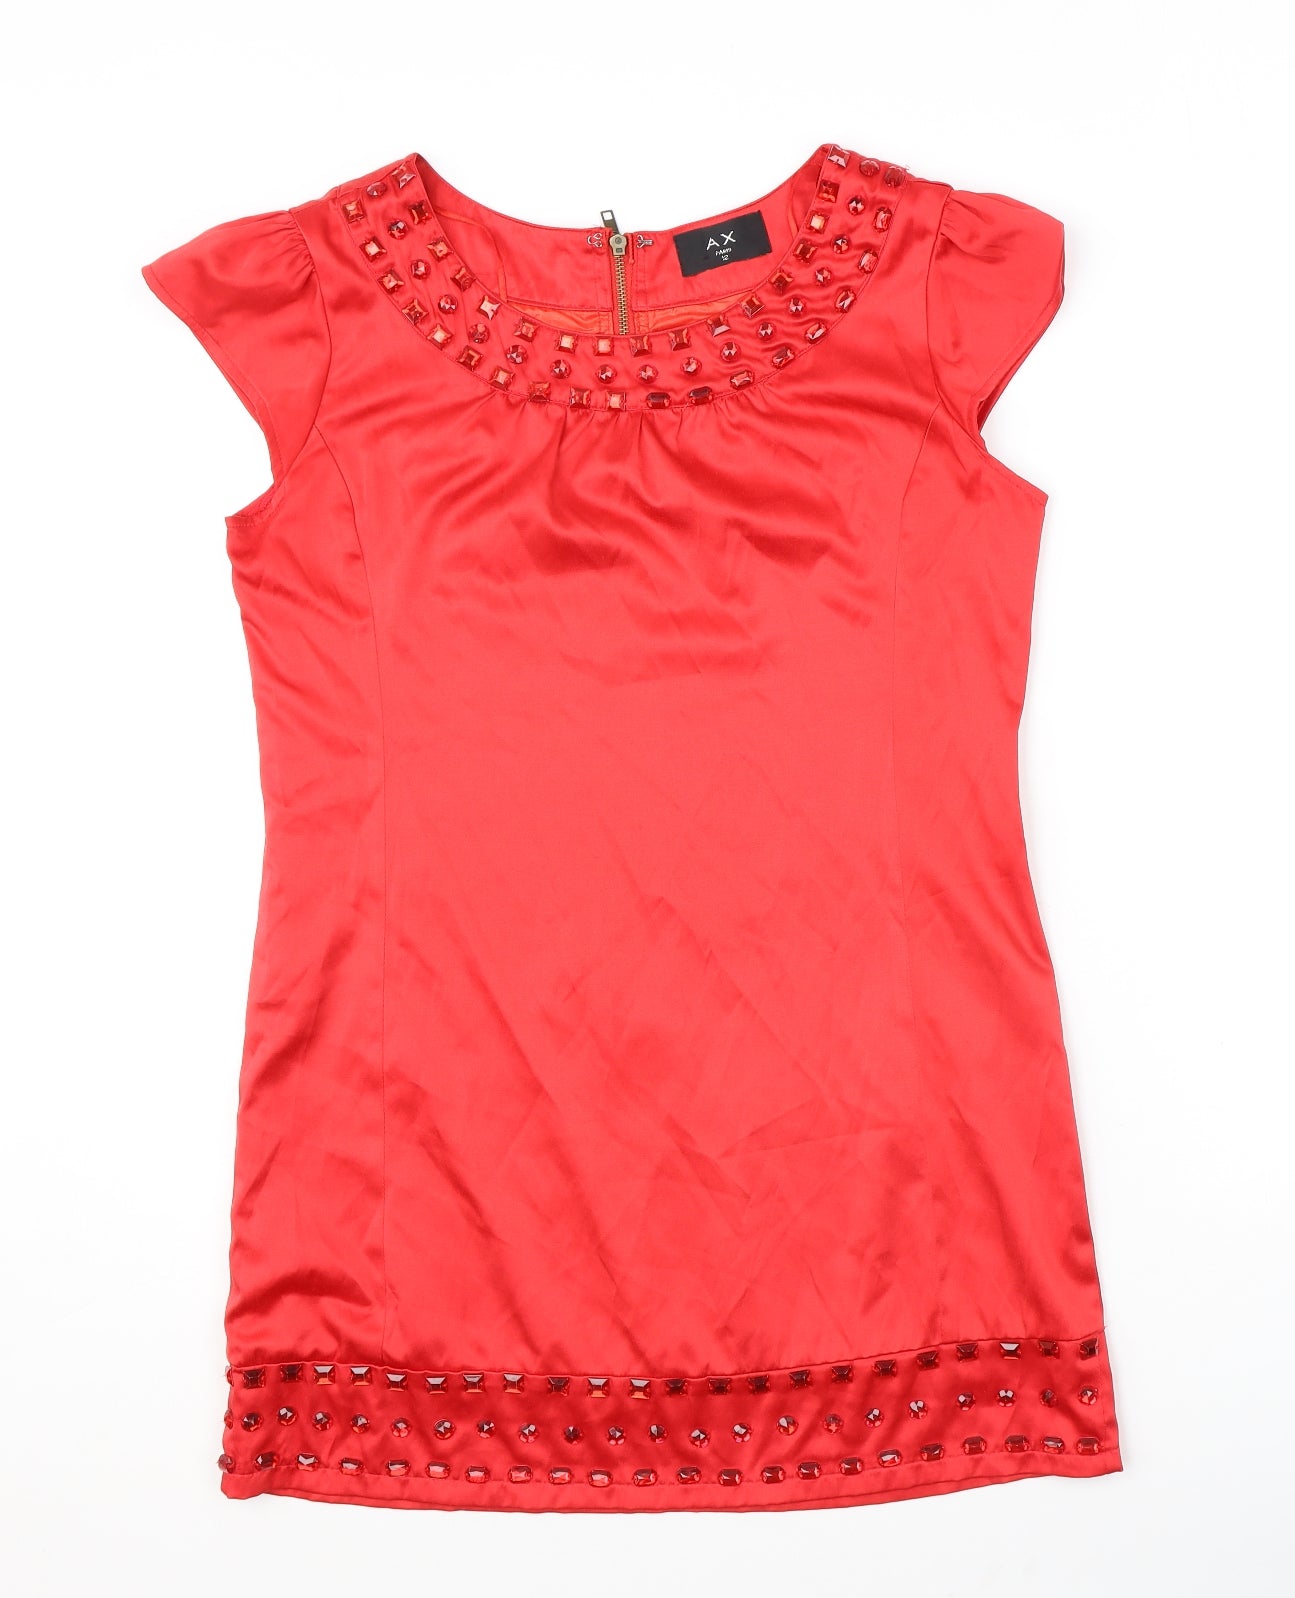 AX Paris Womens Red Cotton Shift Size 12 Round Neck Zip